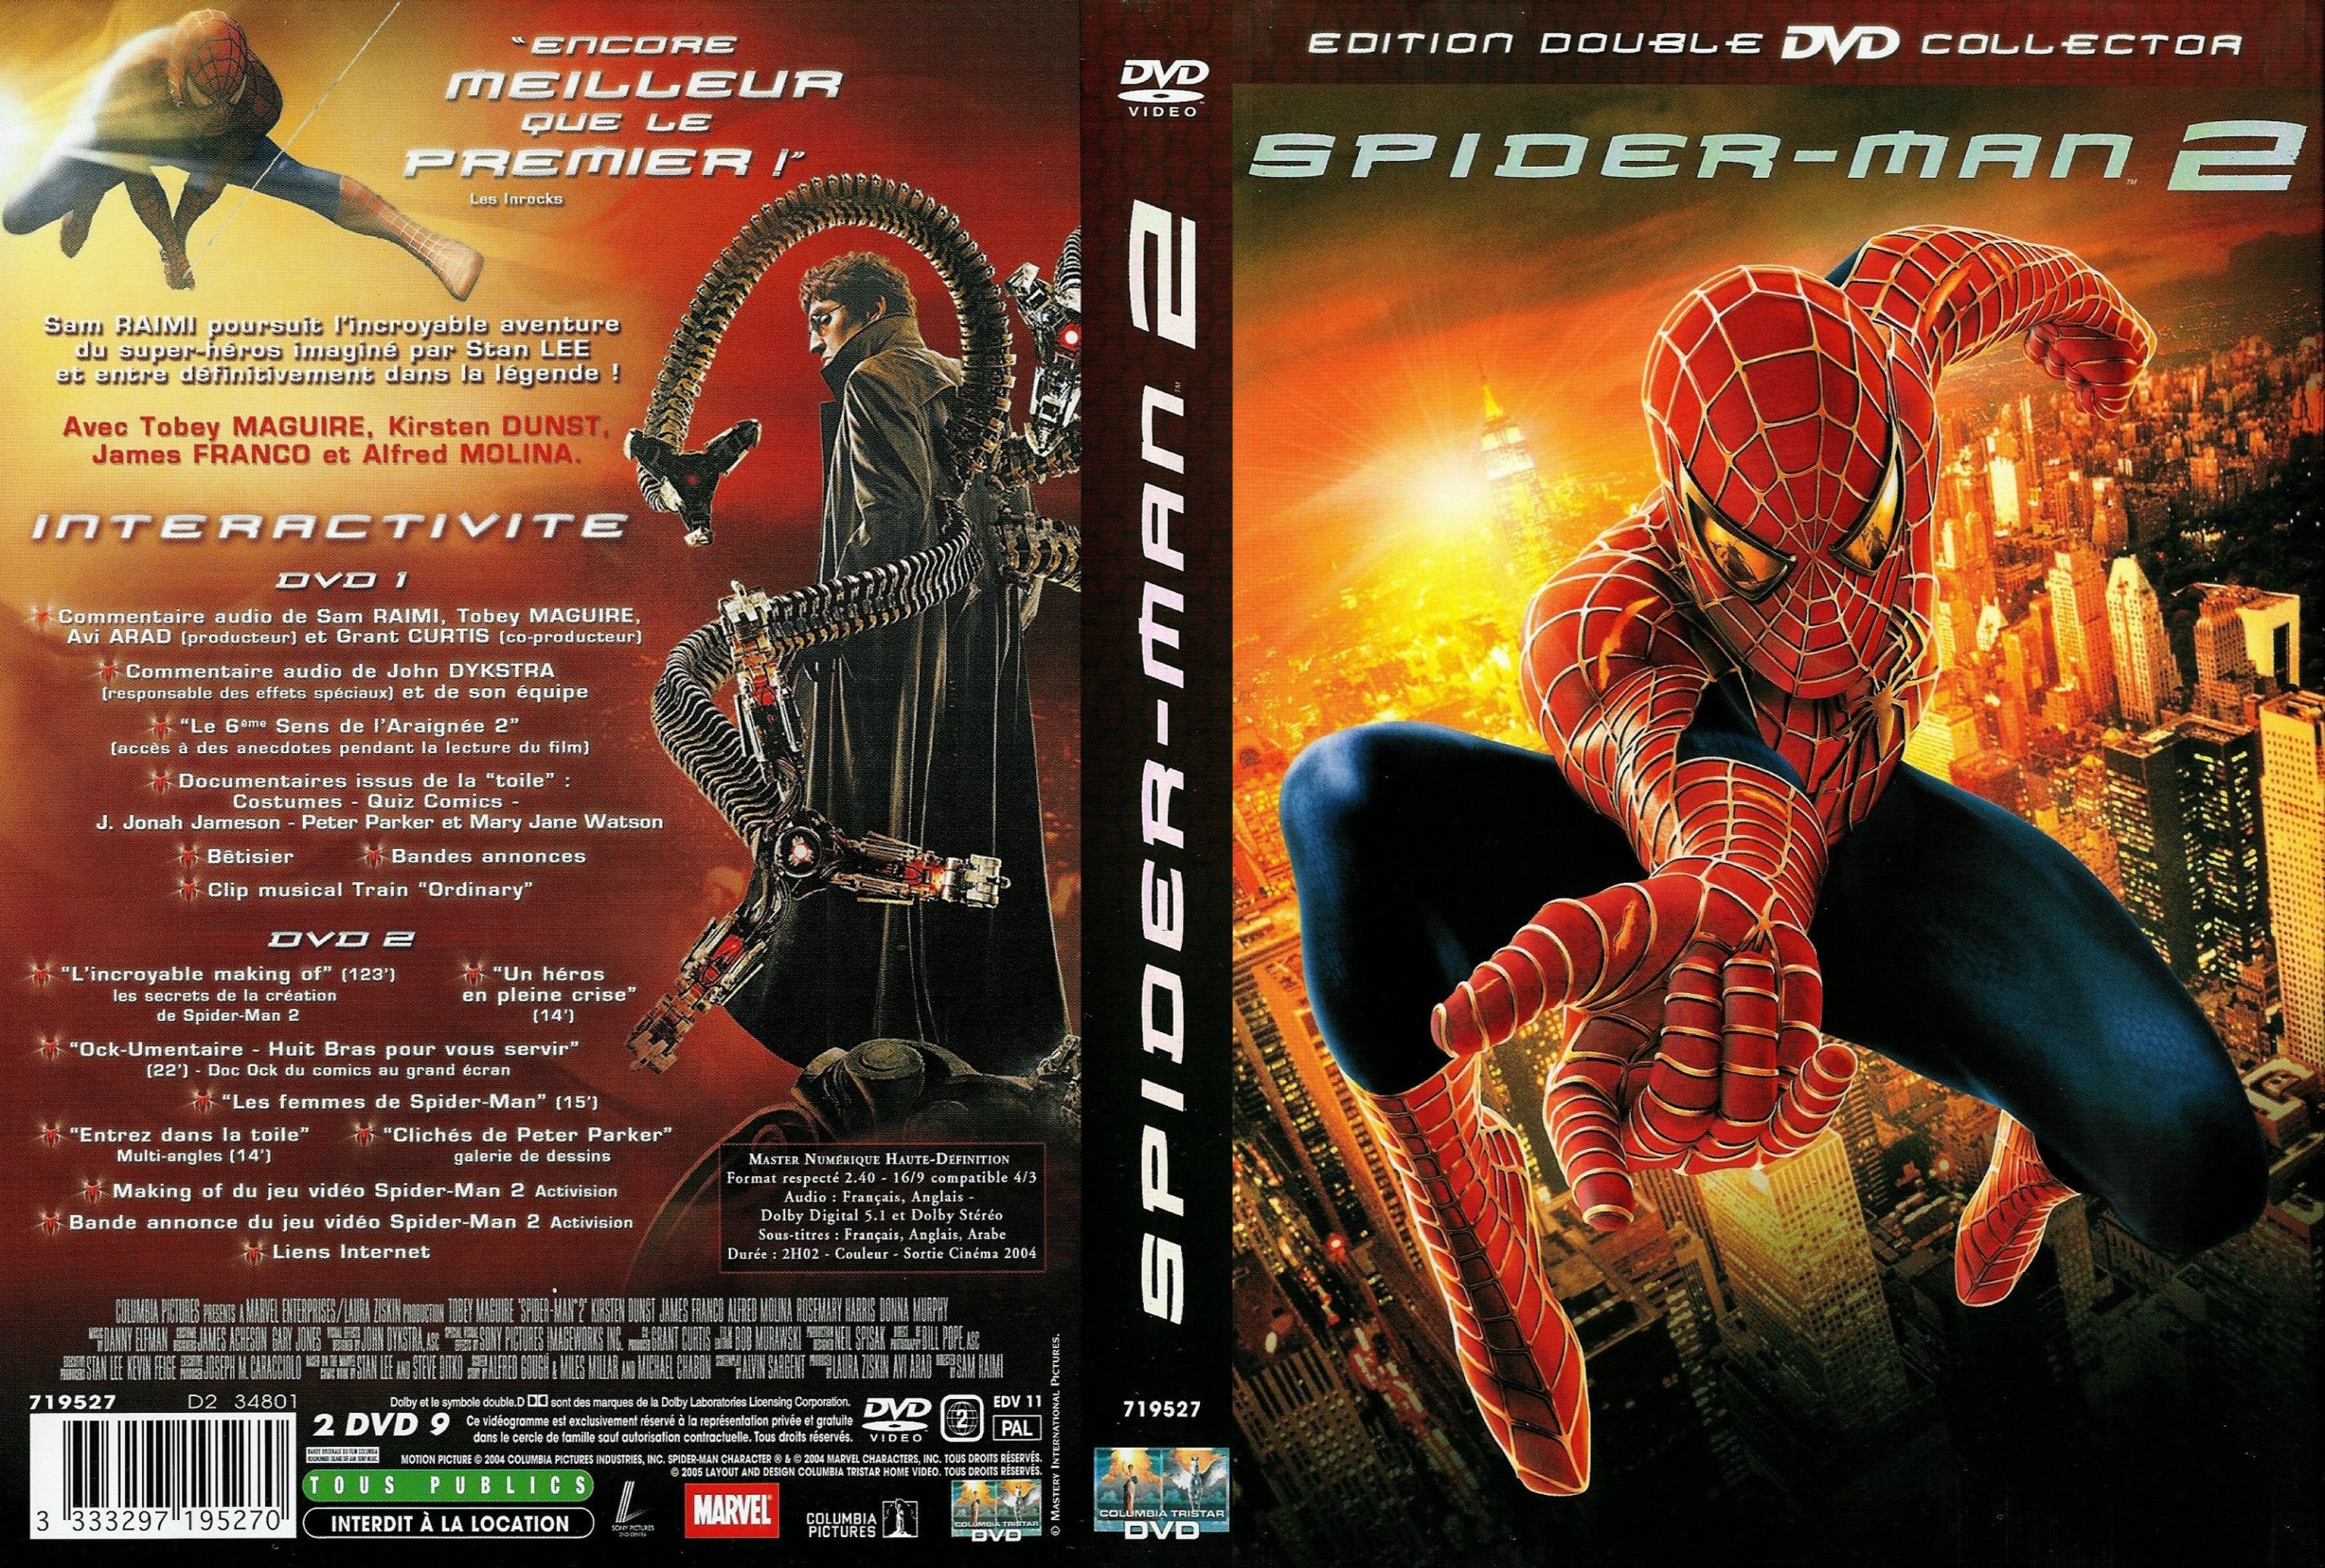 Jaquette DVD Spiderman 2 v2